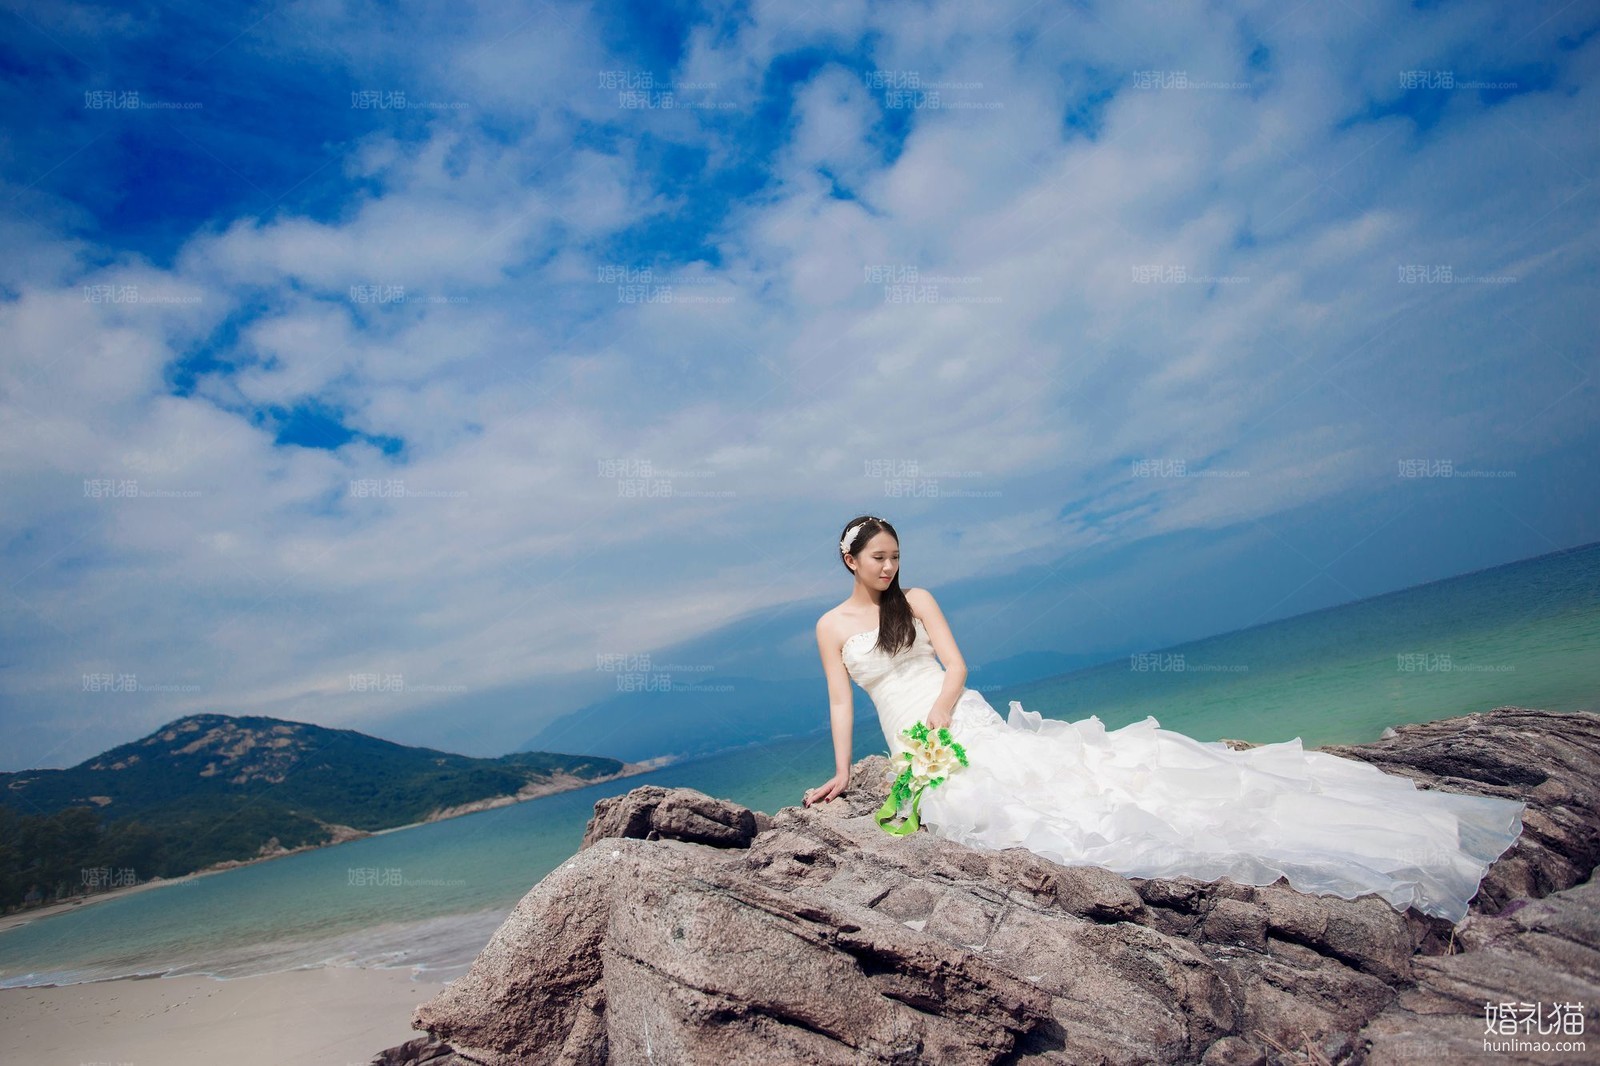 海景婚纱照,[海景, 礁石],深圳婚纱照,婚纱照图片